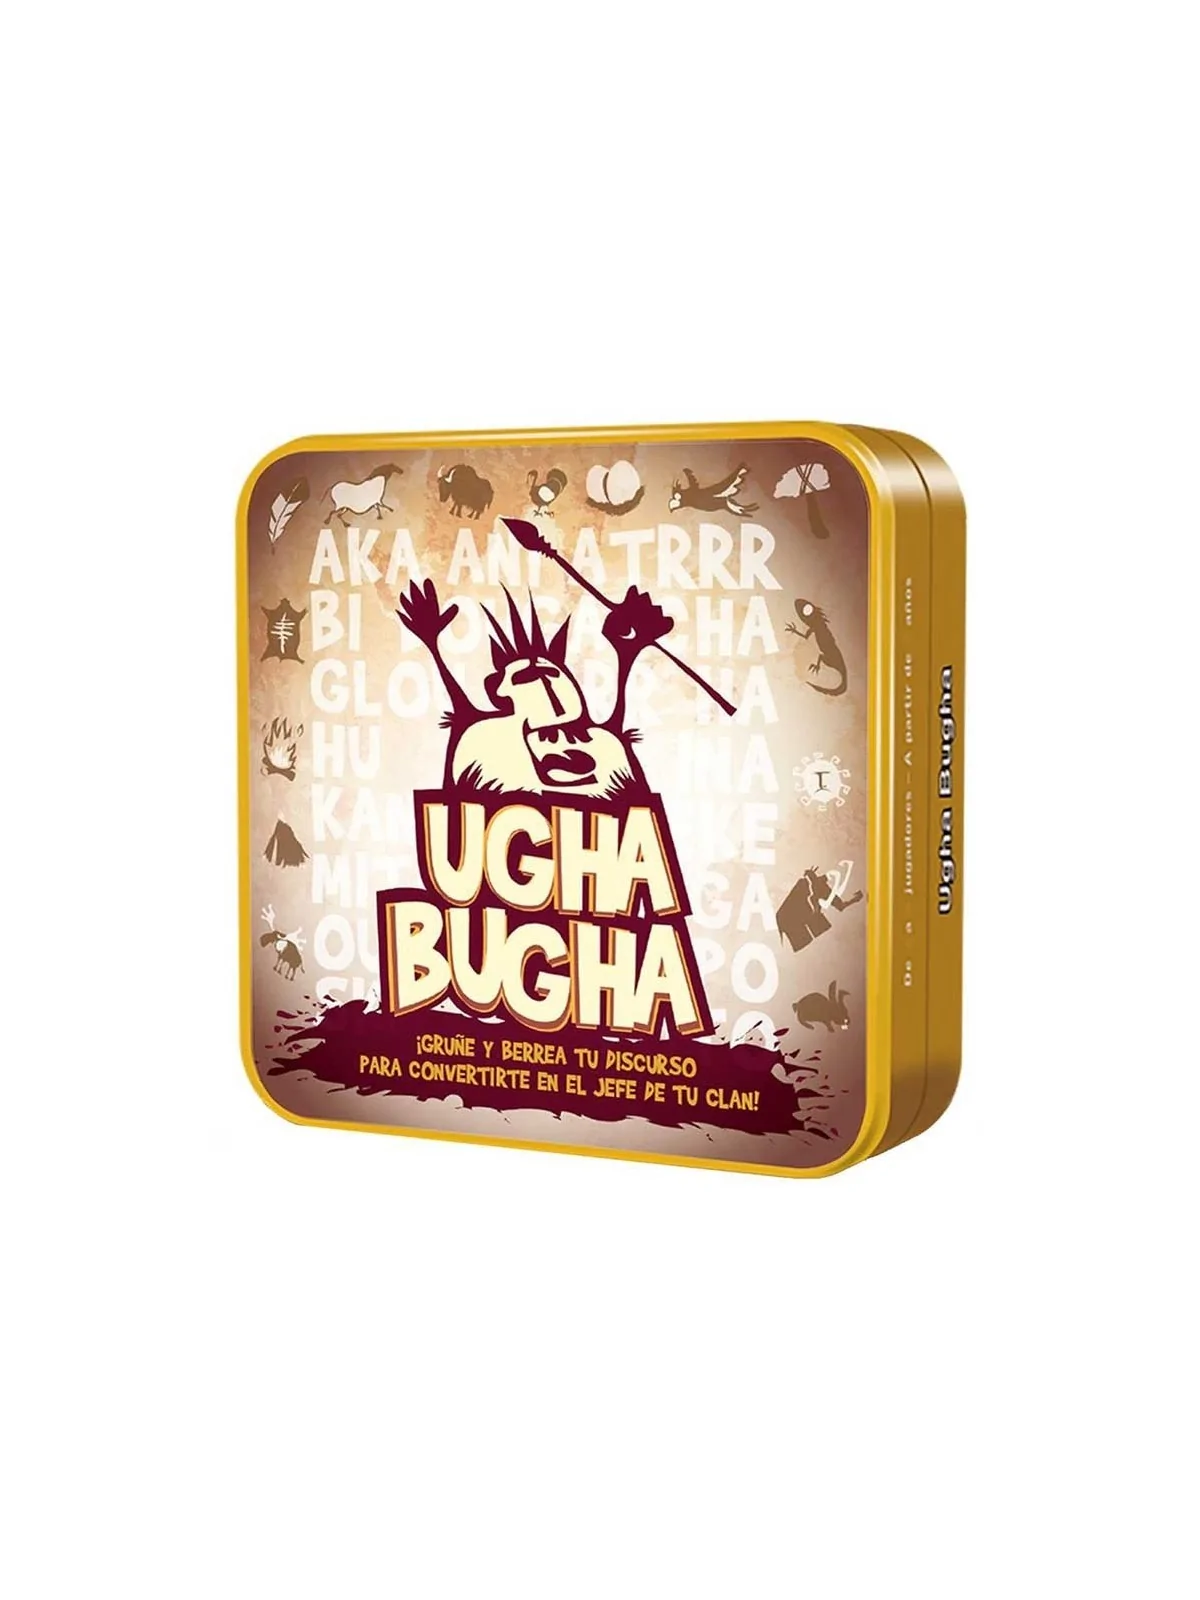 Comprar Ugha Bugha barato al mejor precio 9,00 € de Cocktail Games